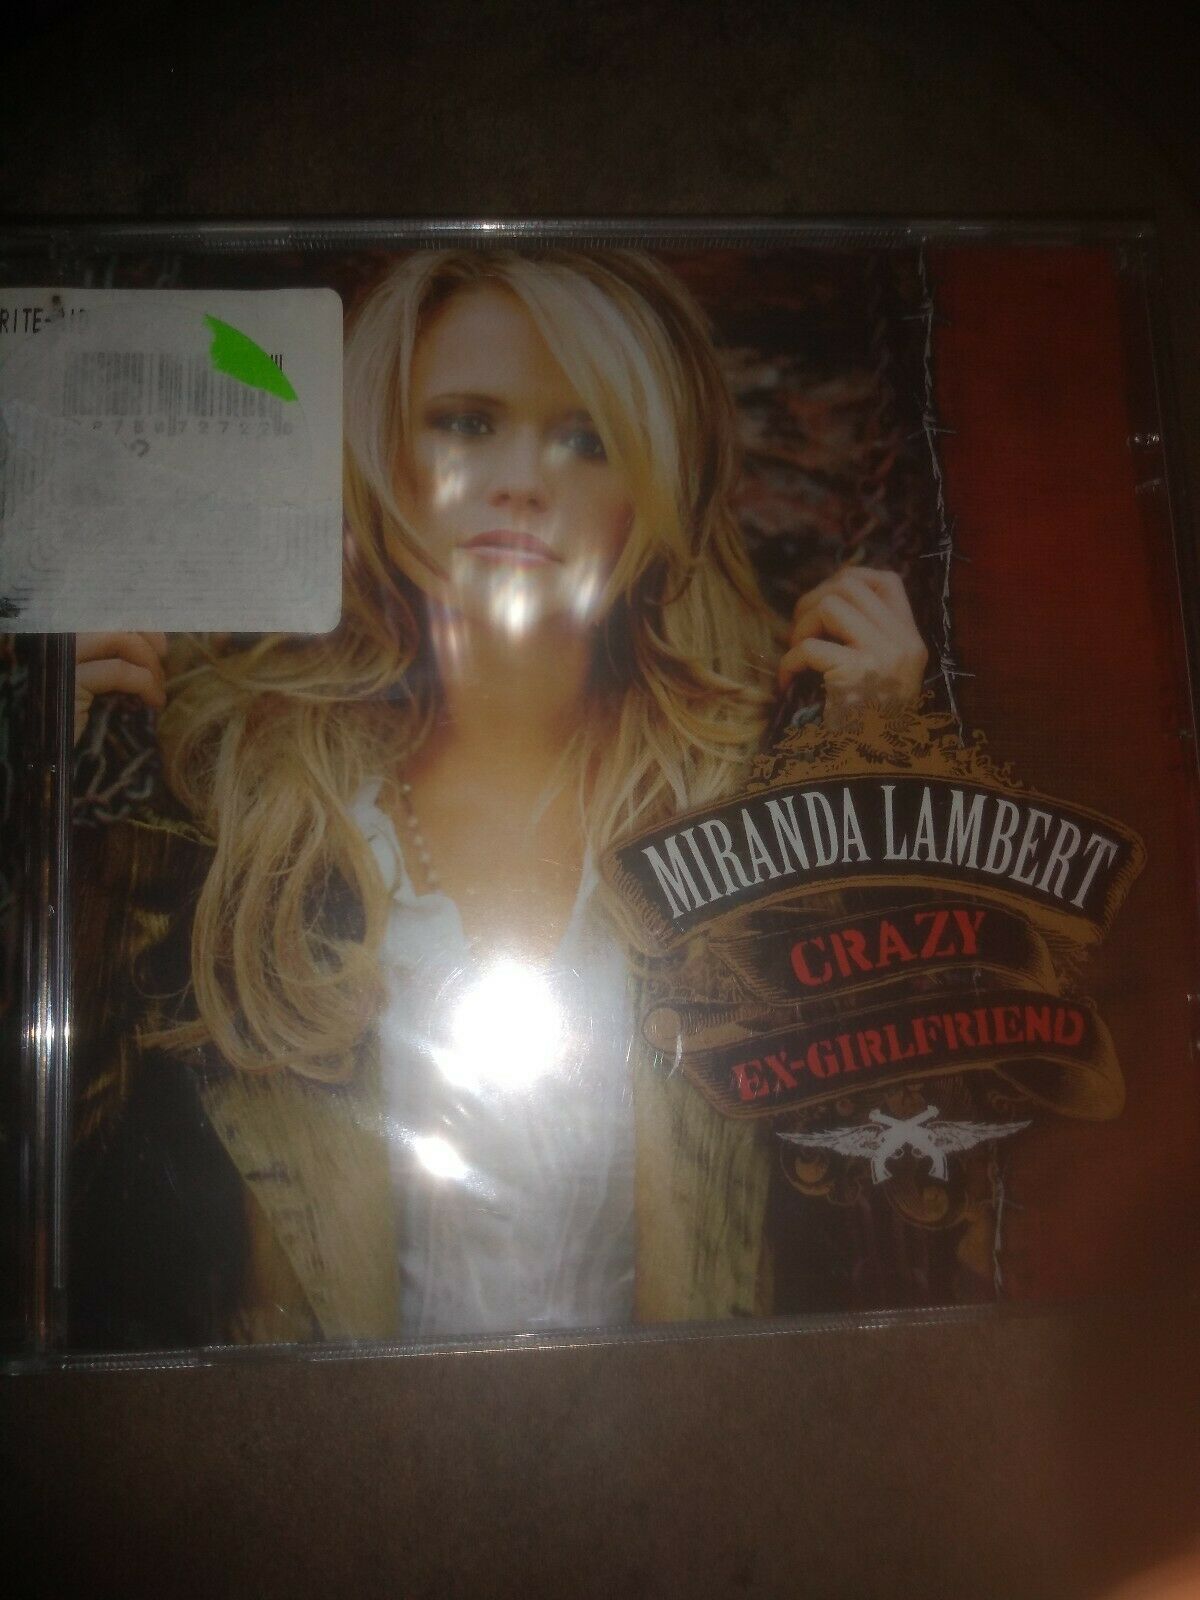 Primary image for Miranda Lambert - Crazy Ex-Girlfriend [New CD]